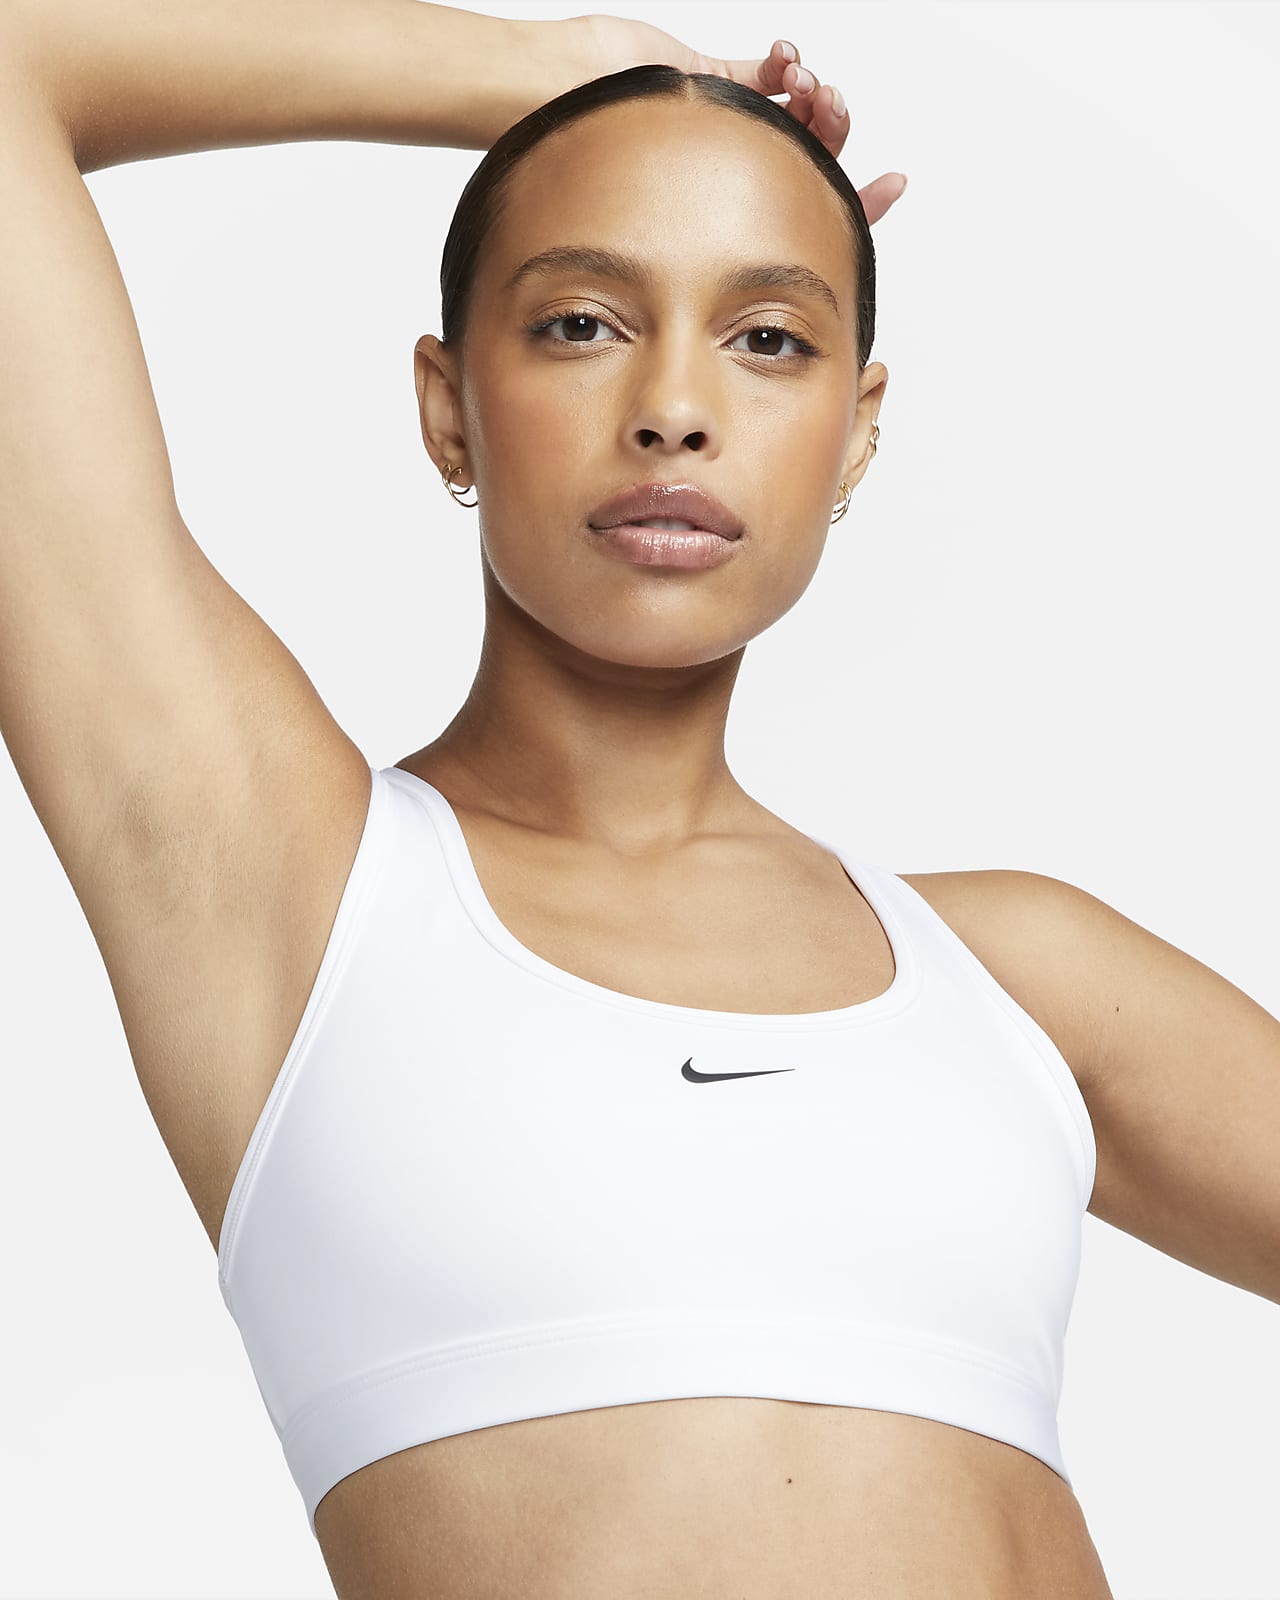 Brassière de sport à maintien léger Nike Swoosh Light Support pour femme